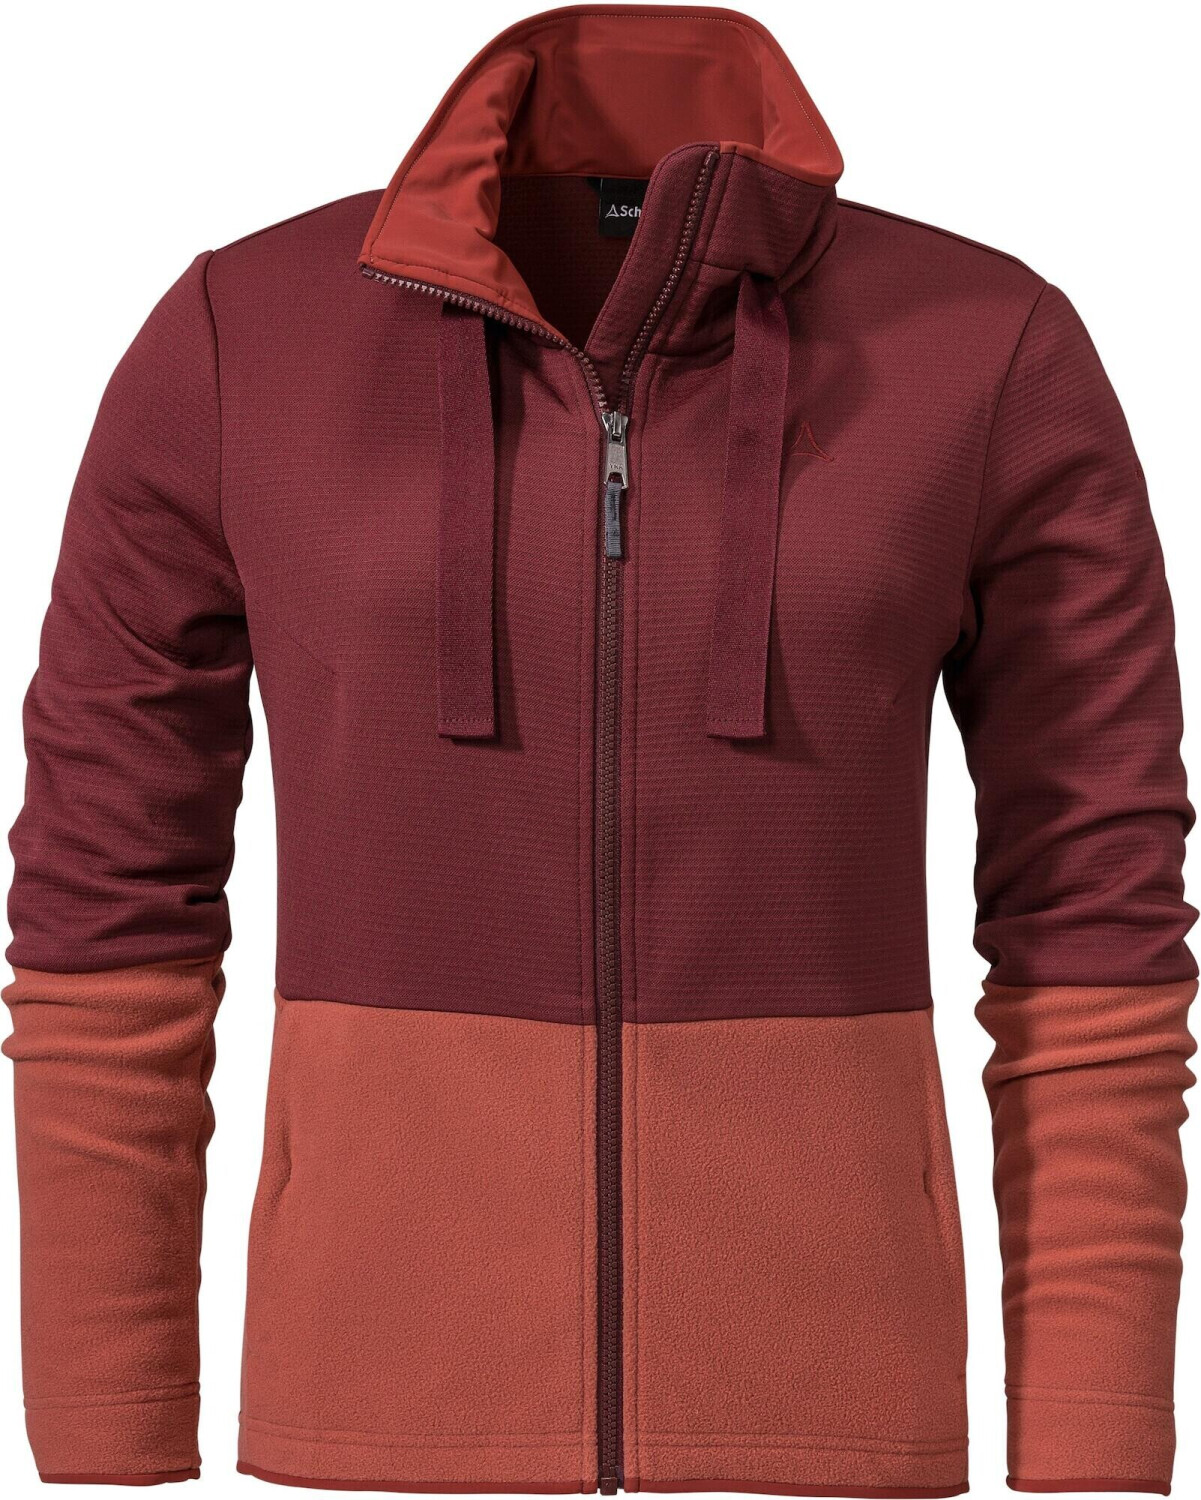 Schöffel Fleece Jacket Pelham L dark burgundy ab 69,59 € | Preisvergleich  bei